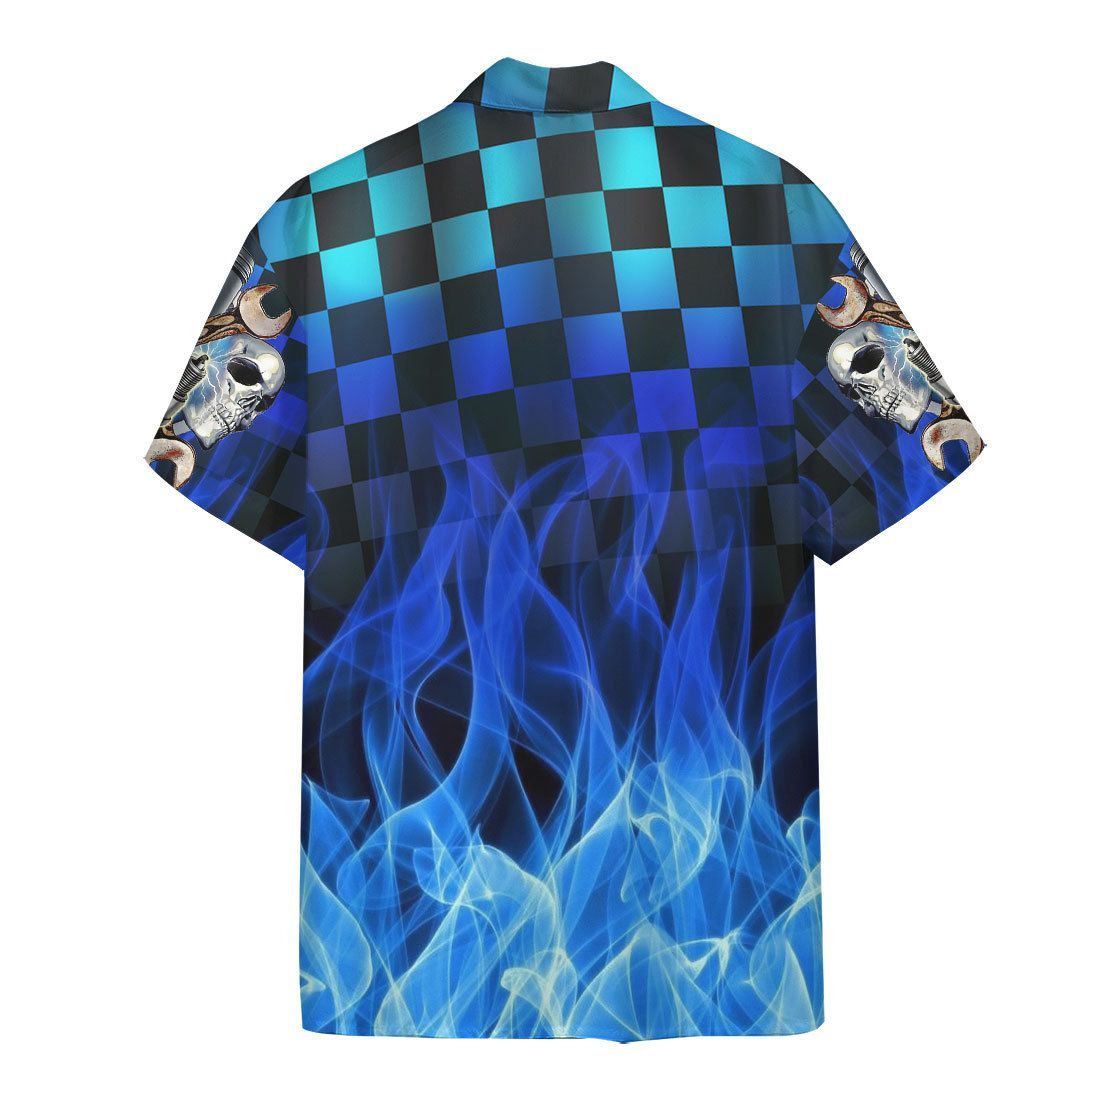 Blue Fire Hot Rod Hawaii Shirt